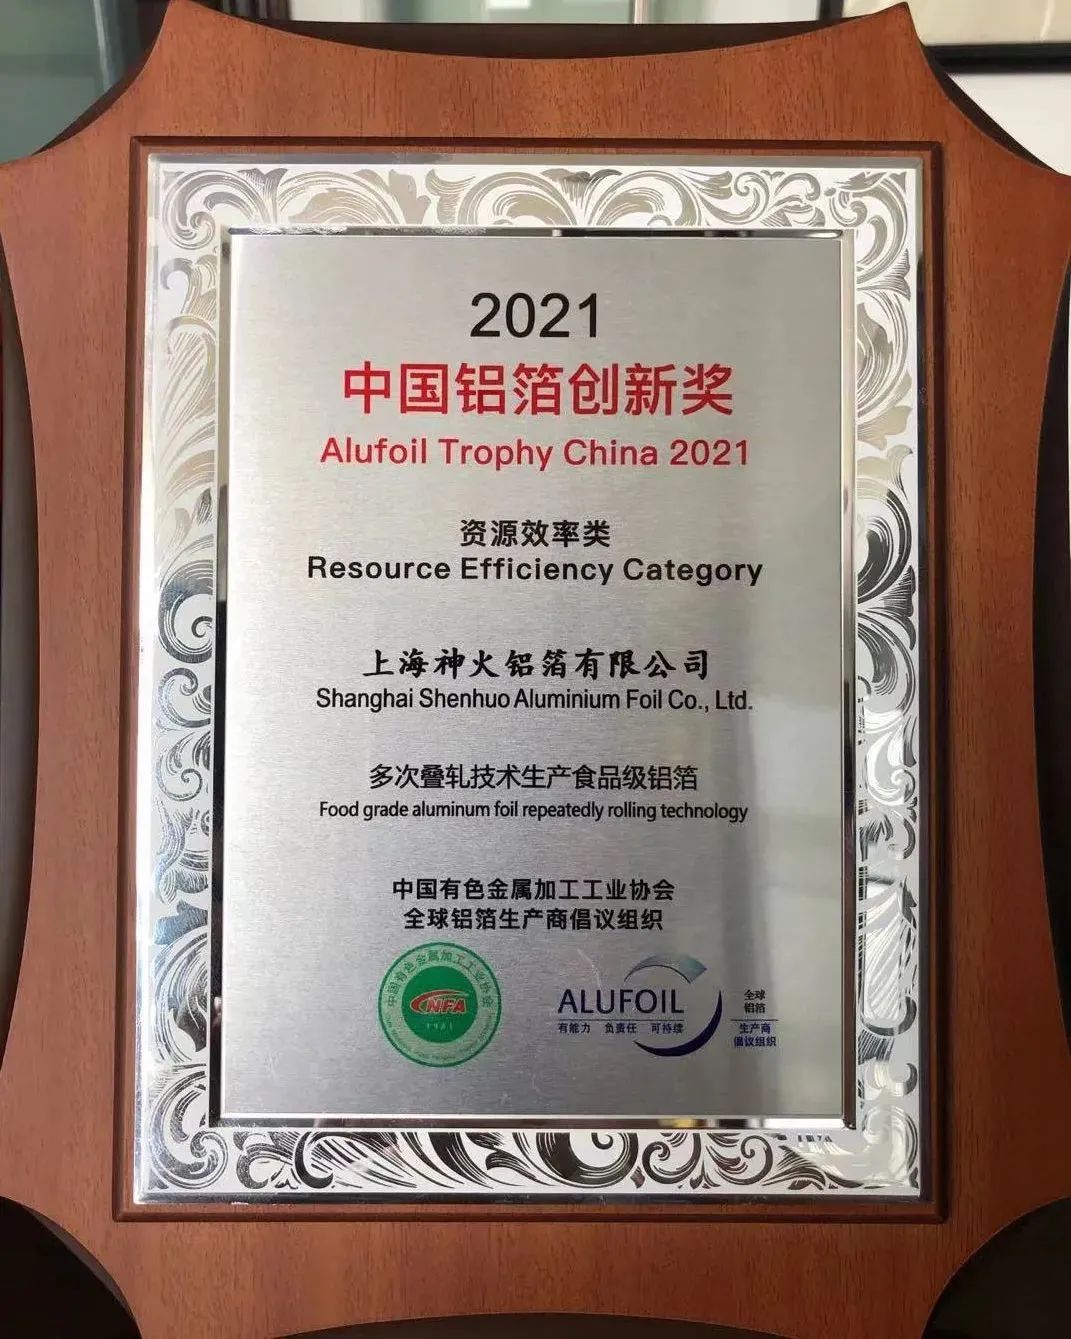 神火股份上海鋁箔獲得2021年度“中國鋁箔創新獎”